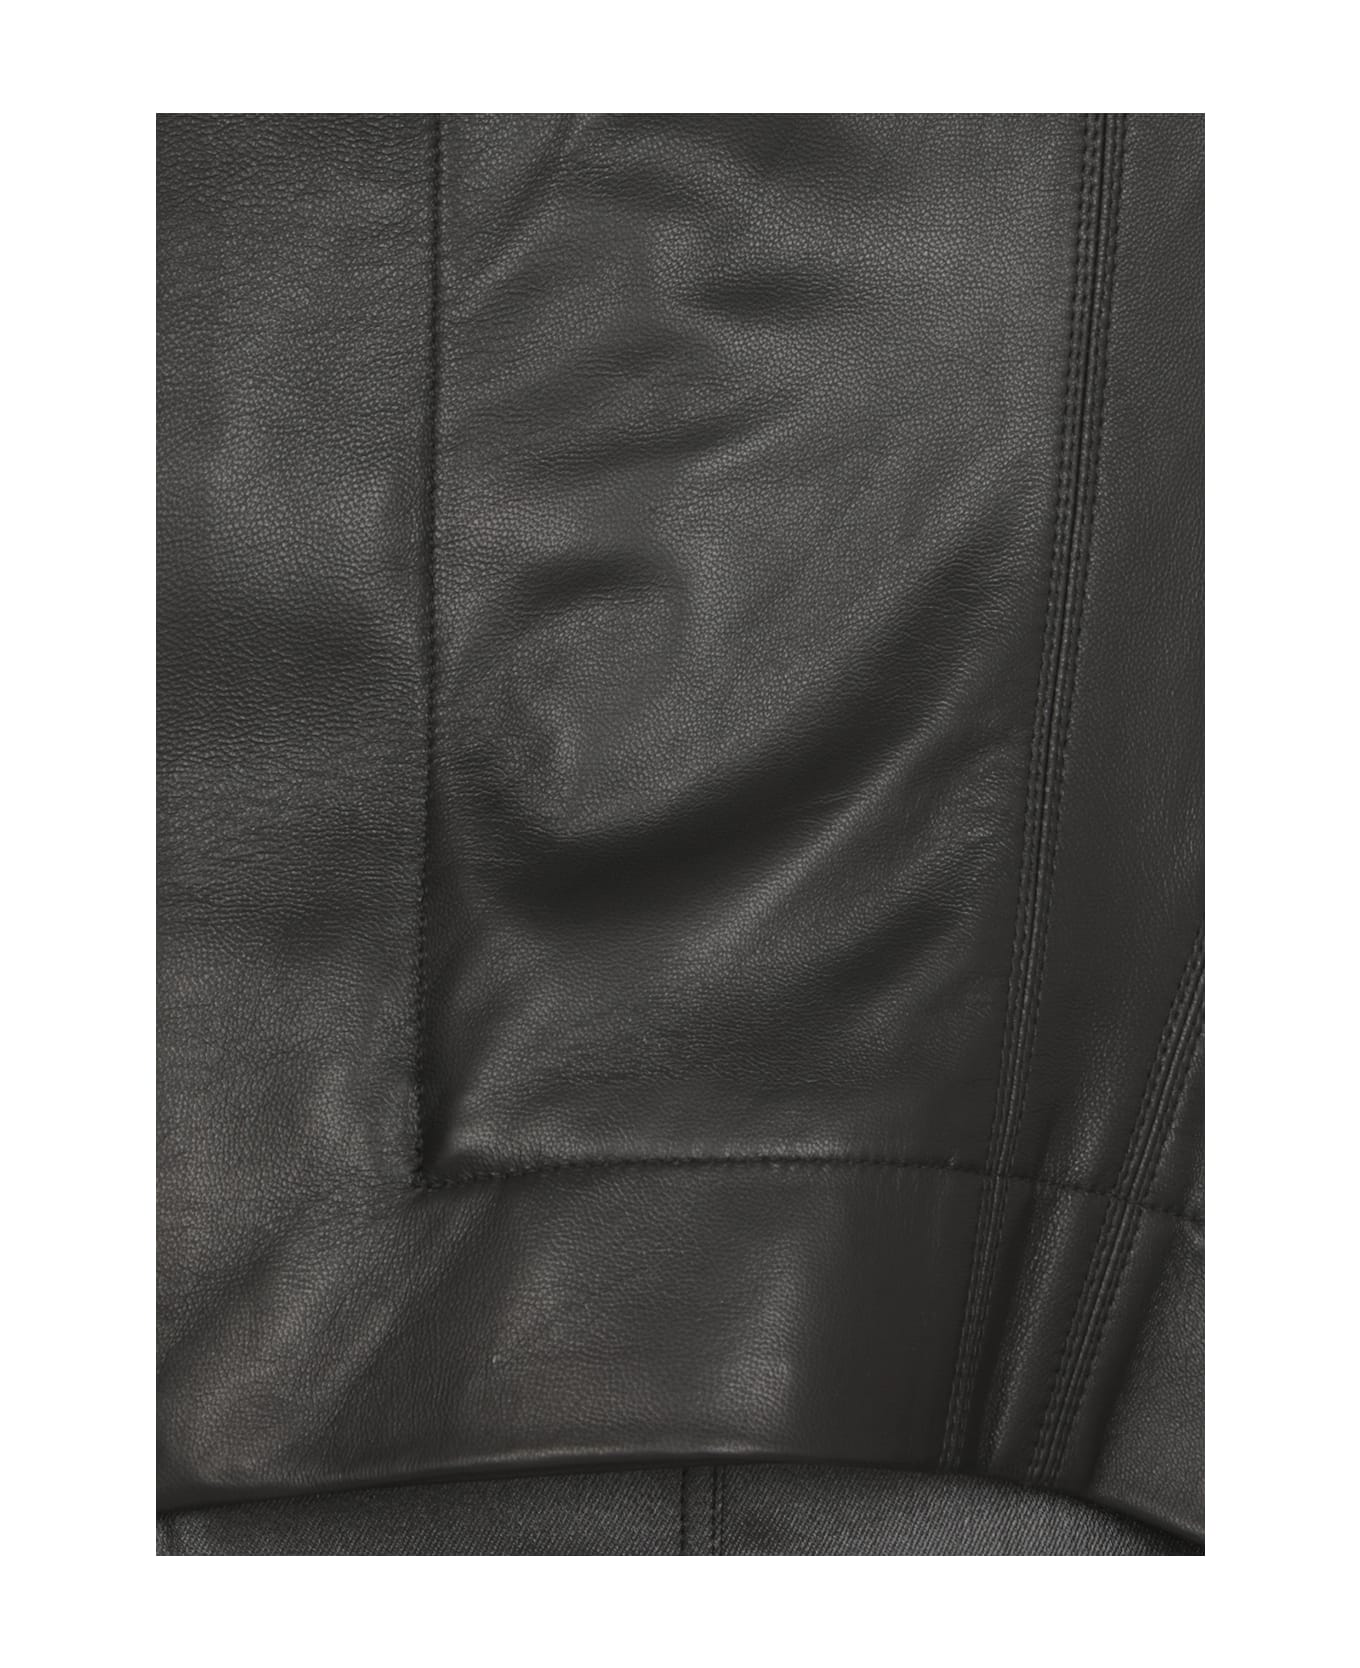 Rick Owens Naska Biker Leather Jacket In Black Leather - Black